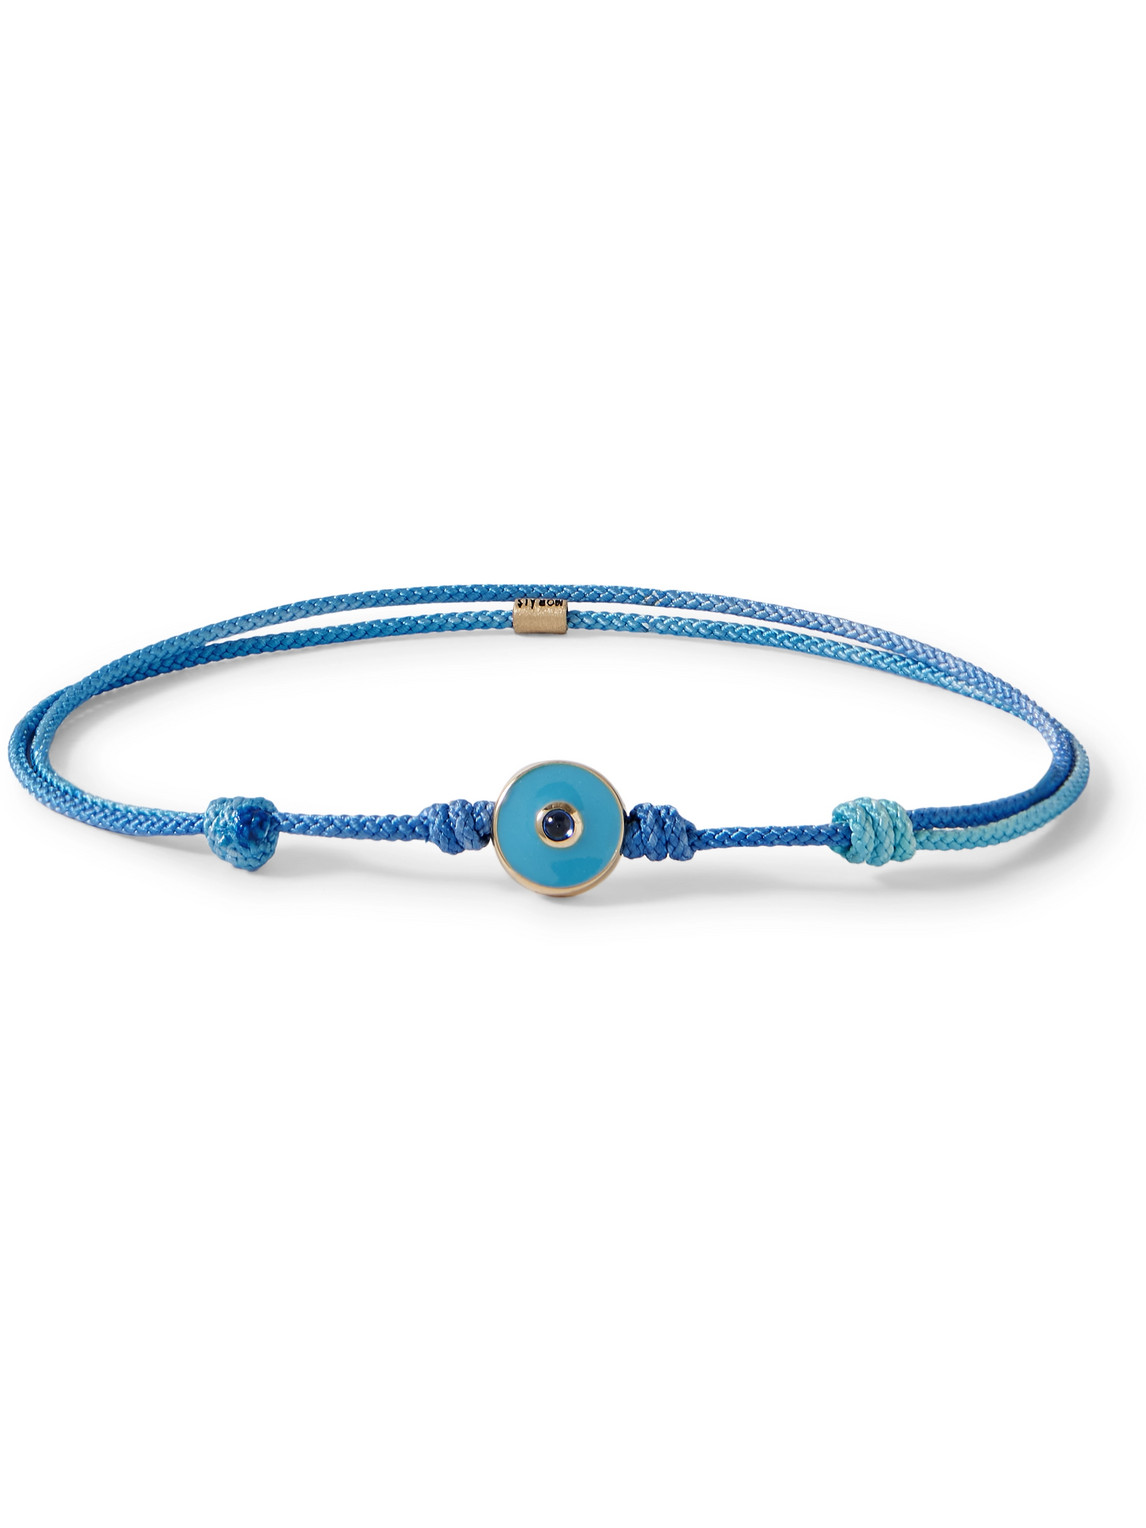 Luis Morais Gold, Enamel, Sapphire And Cord Bracelet In Blue